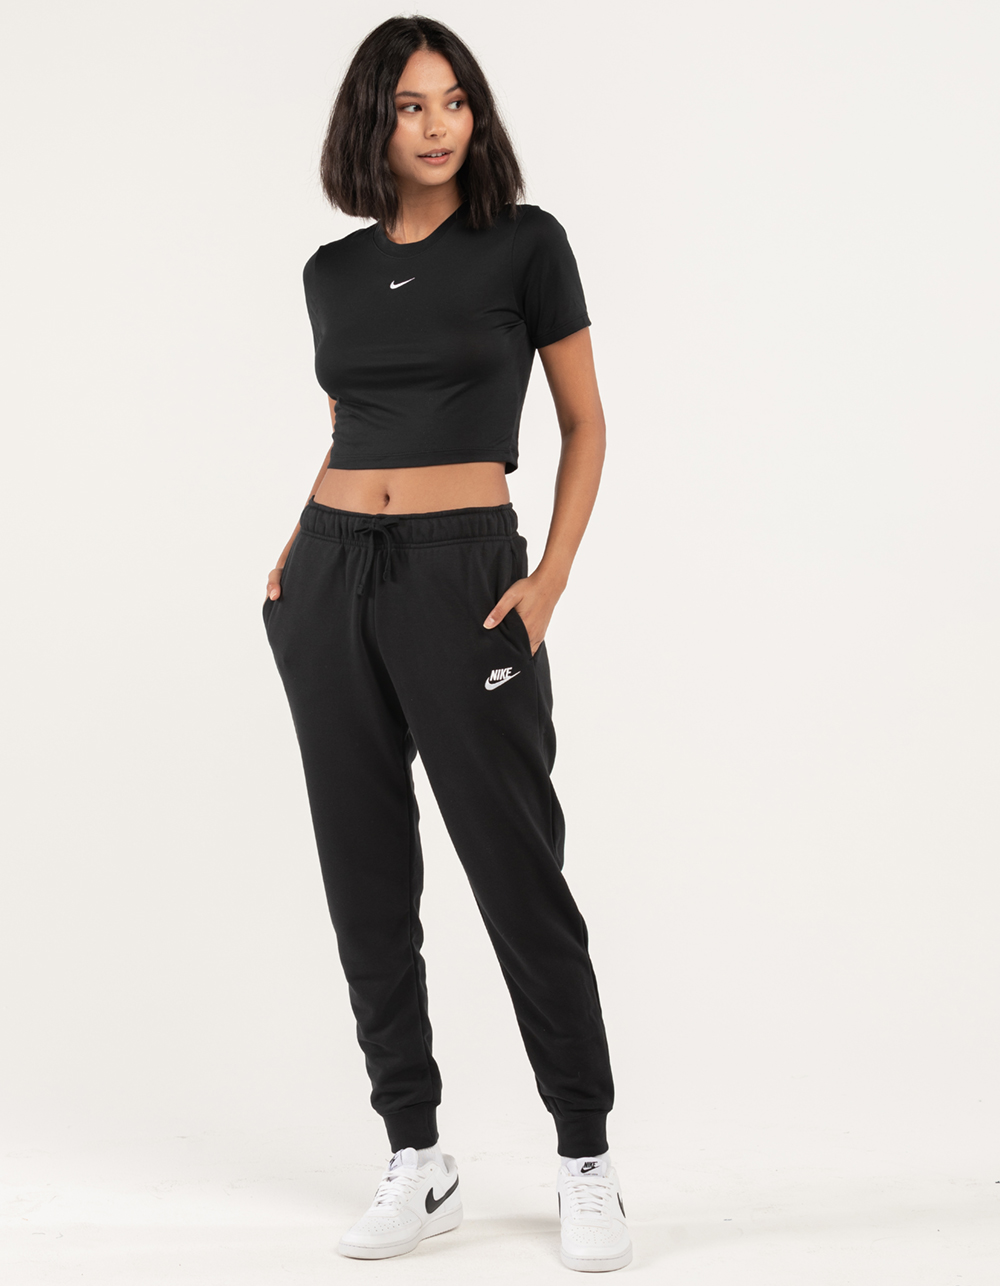 NIKE Sportswear Club Womens Fleece Sweatpants - BLACK